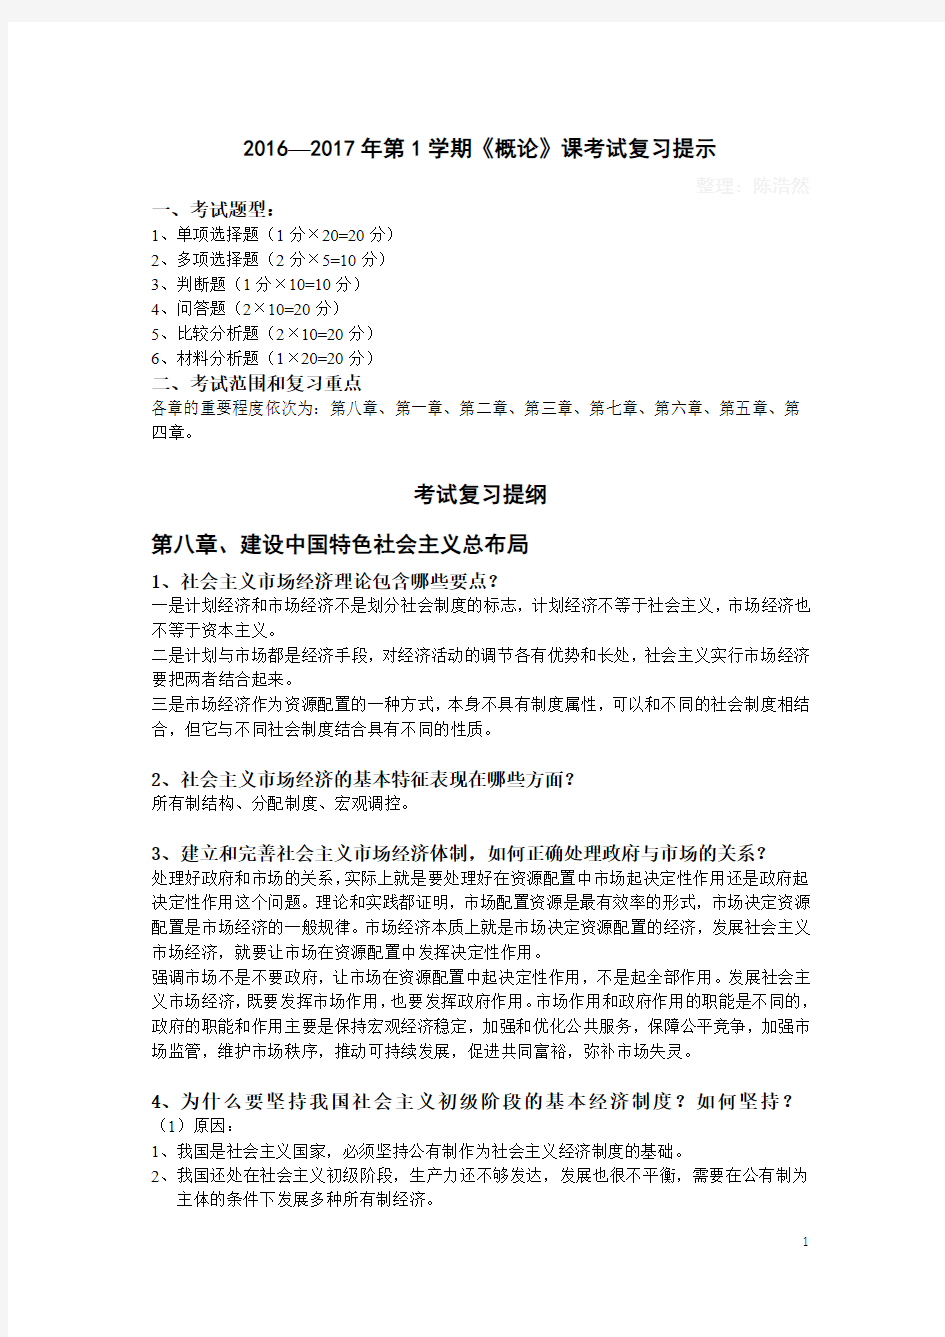 广州大学2016-2017年第1学期《毛概》课考试复习提示